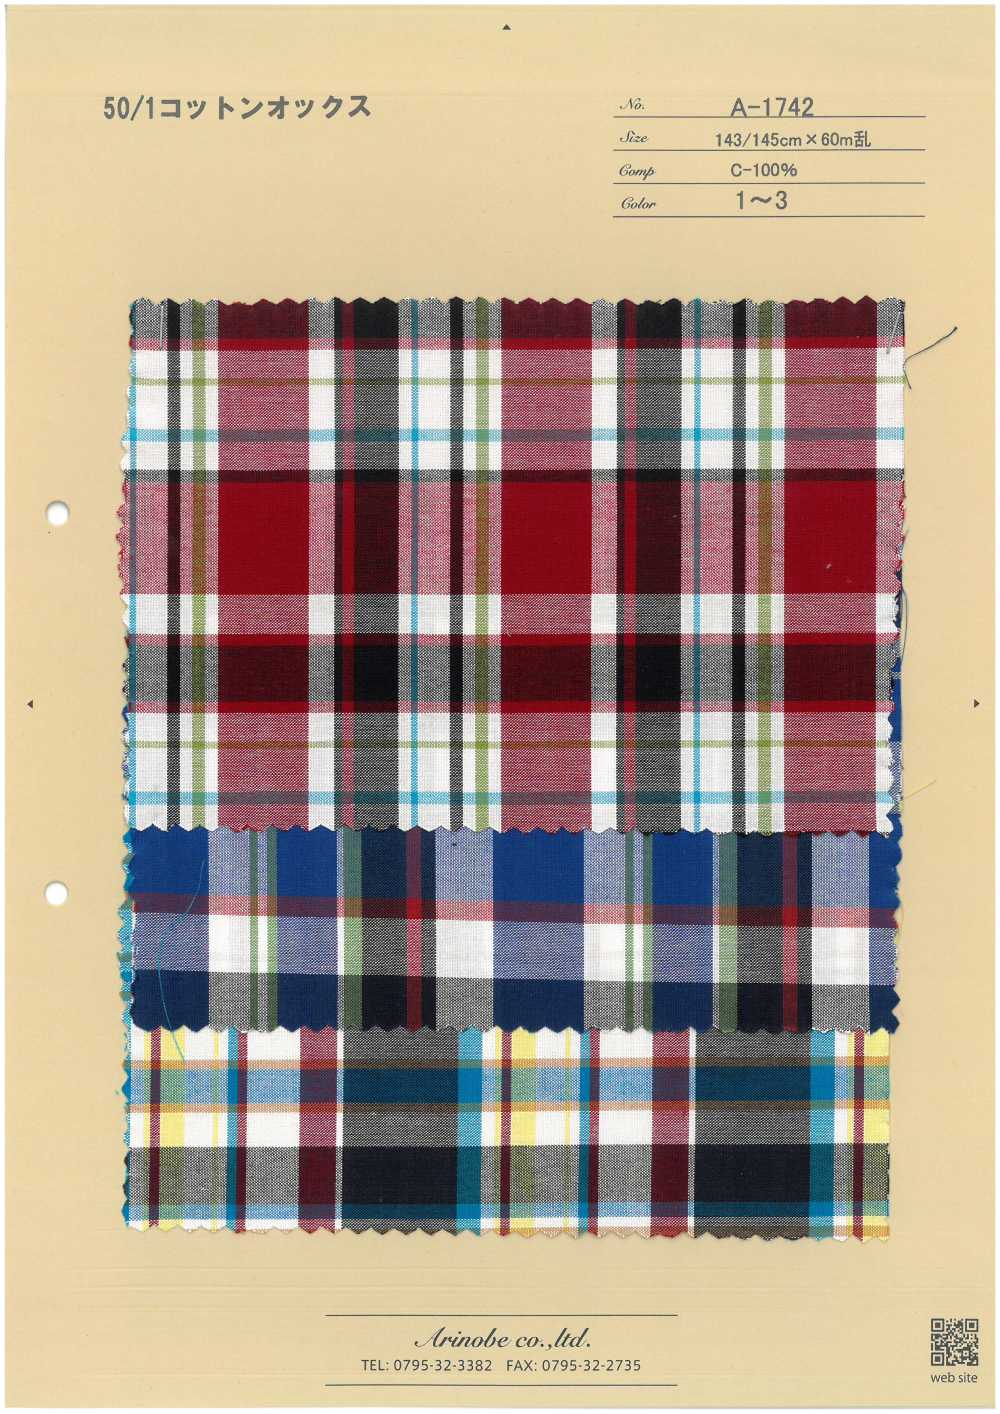 A-1742 50/1 Cotton Oxford[Textile / Fabric] ARINOBE CO., LTD.